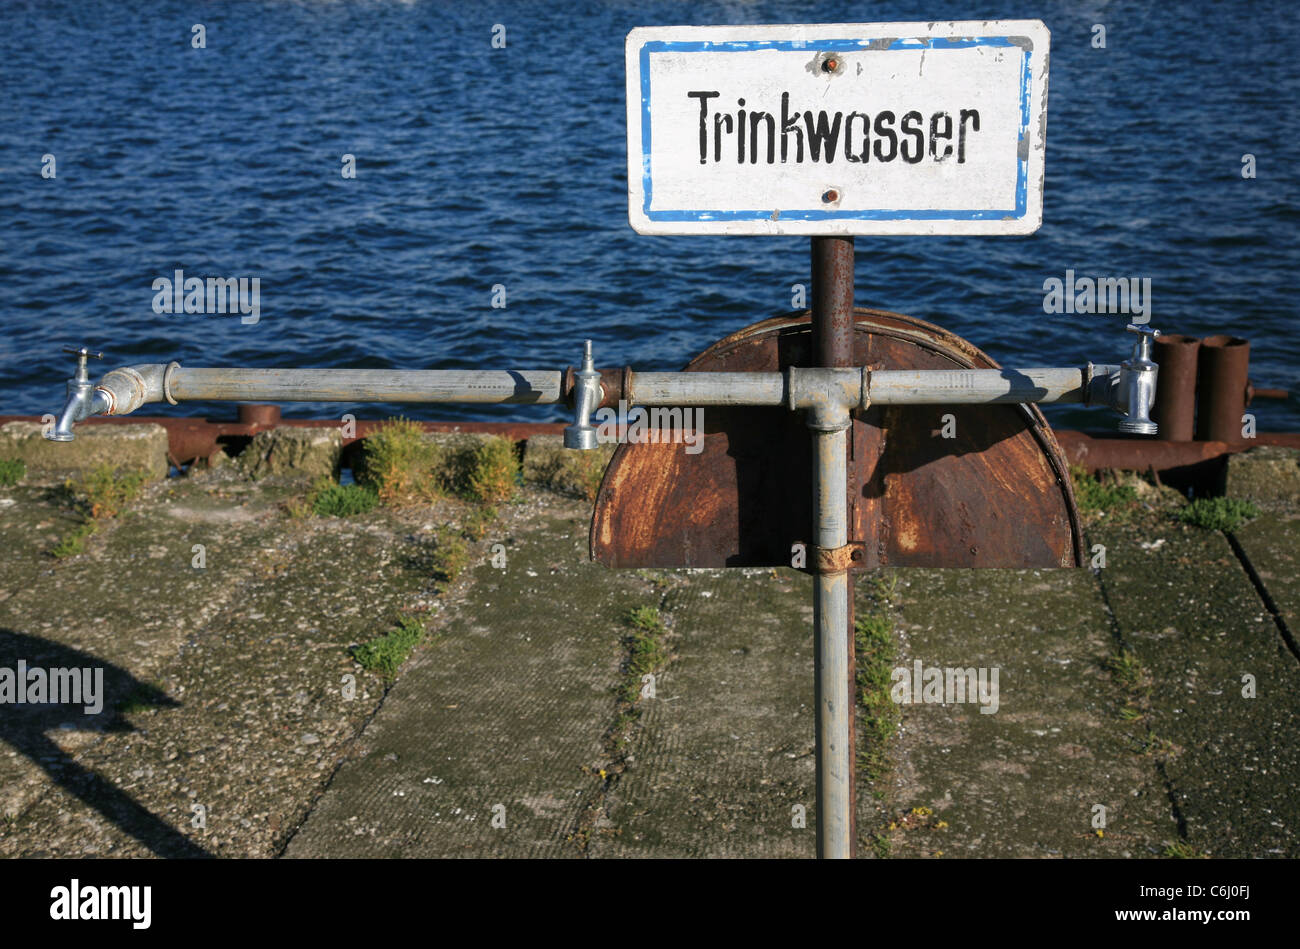 Firmar con tres grifos y agua en el fondo. La palabra alemana "Trinkwasser' en el signo significa "agua potable" en inglés. Foto de stock